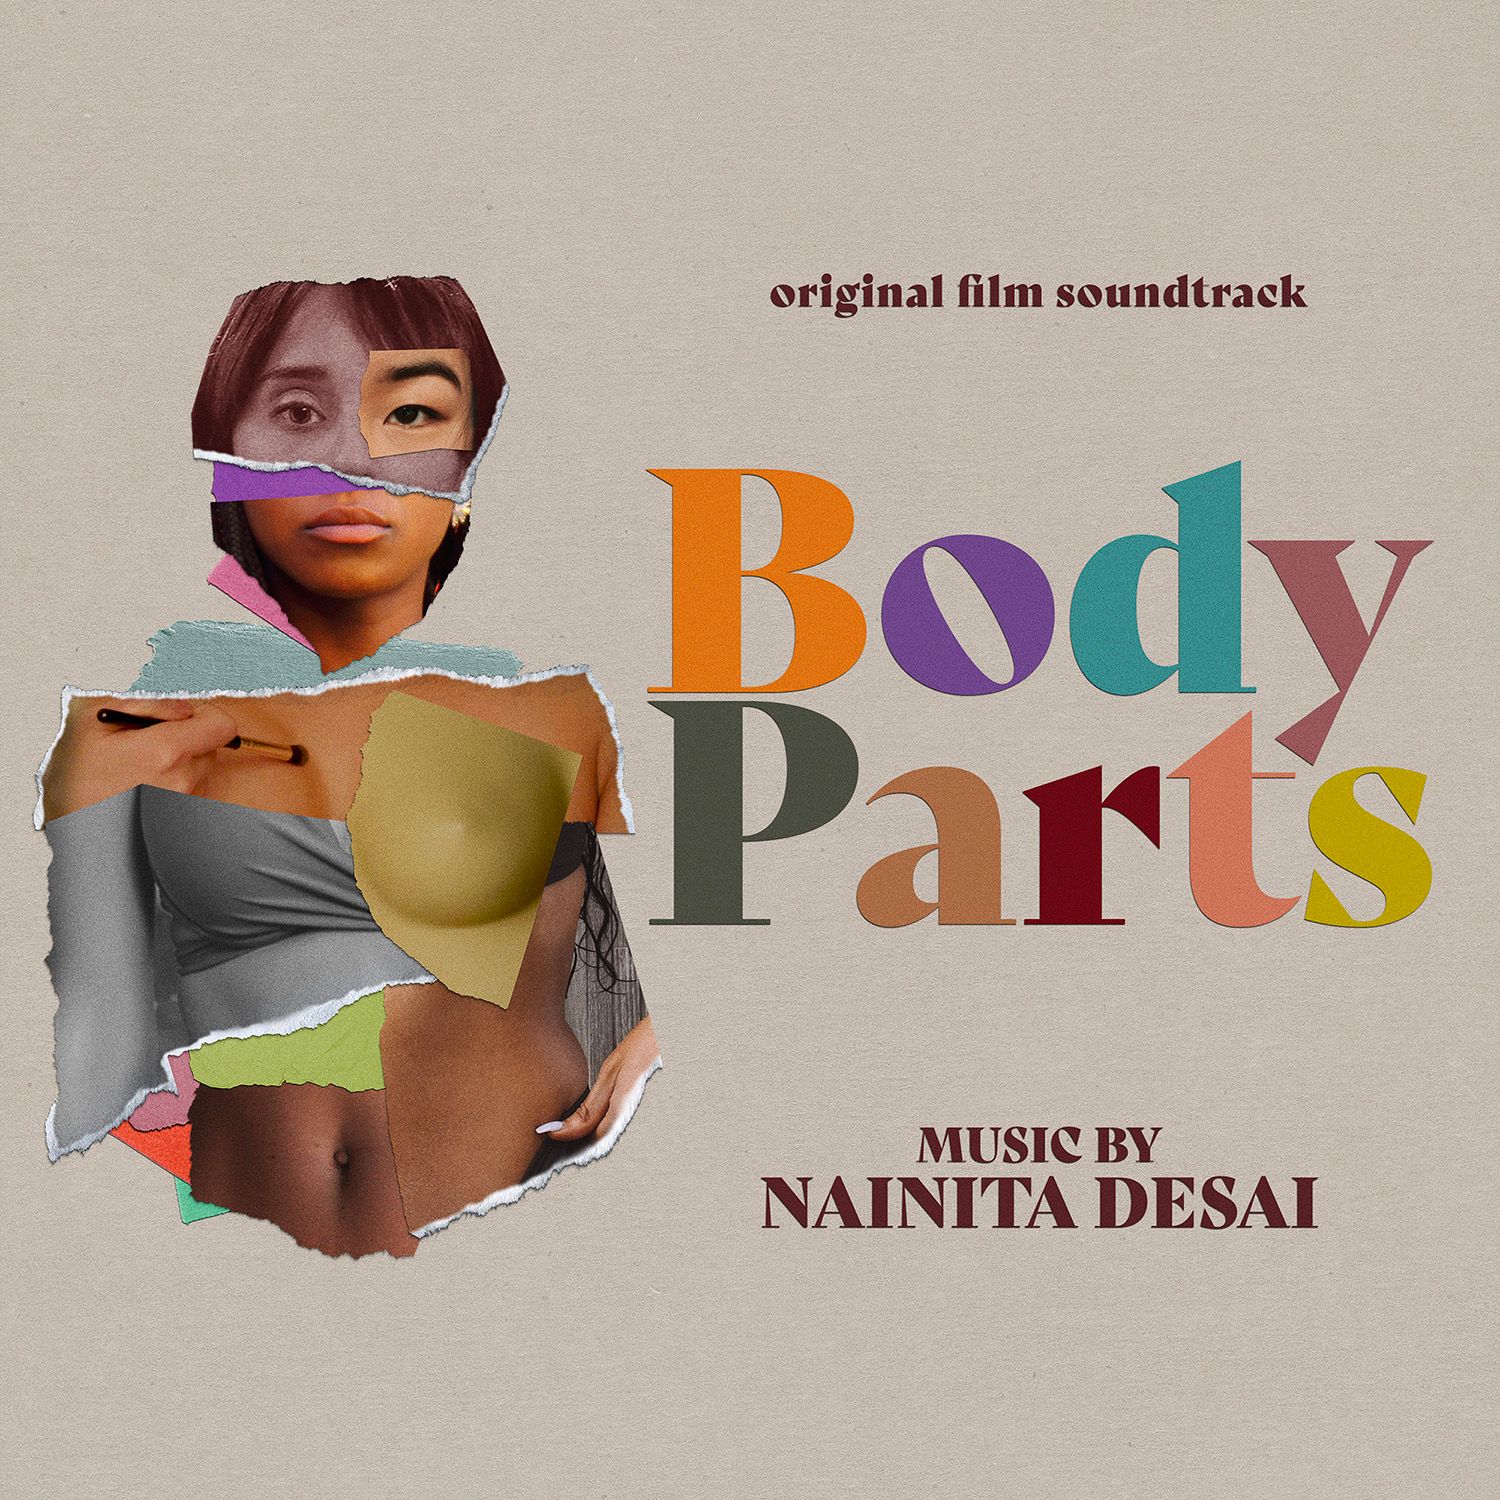 Body Parts Original Film Soundtrack by Nainita Desai